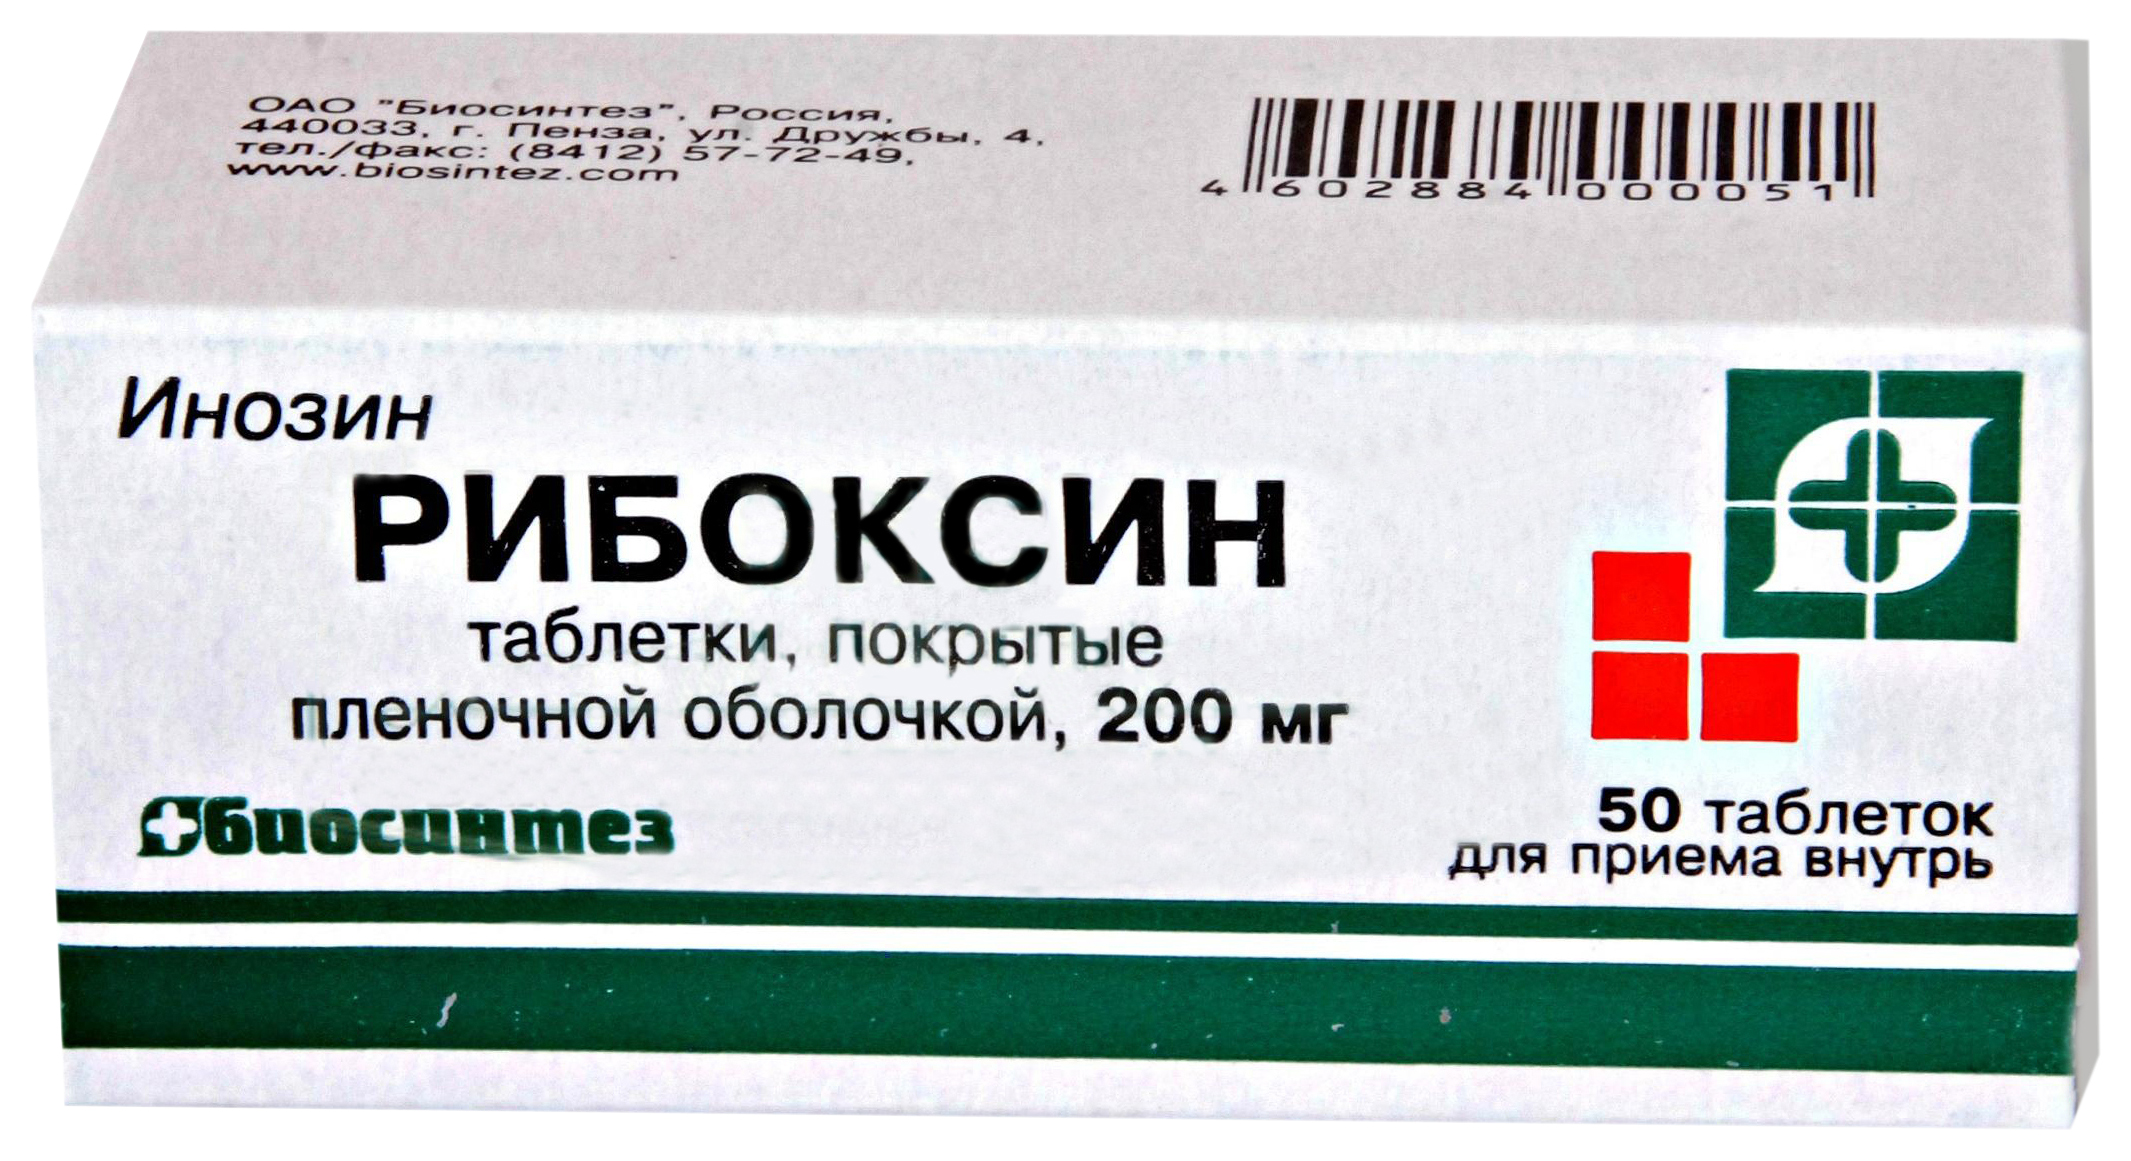 Рибоксин таблетки 200 мг 50 шт.